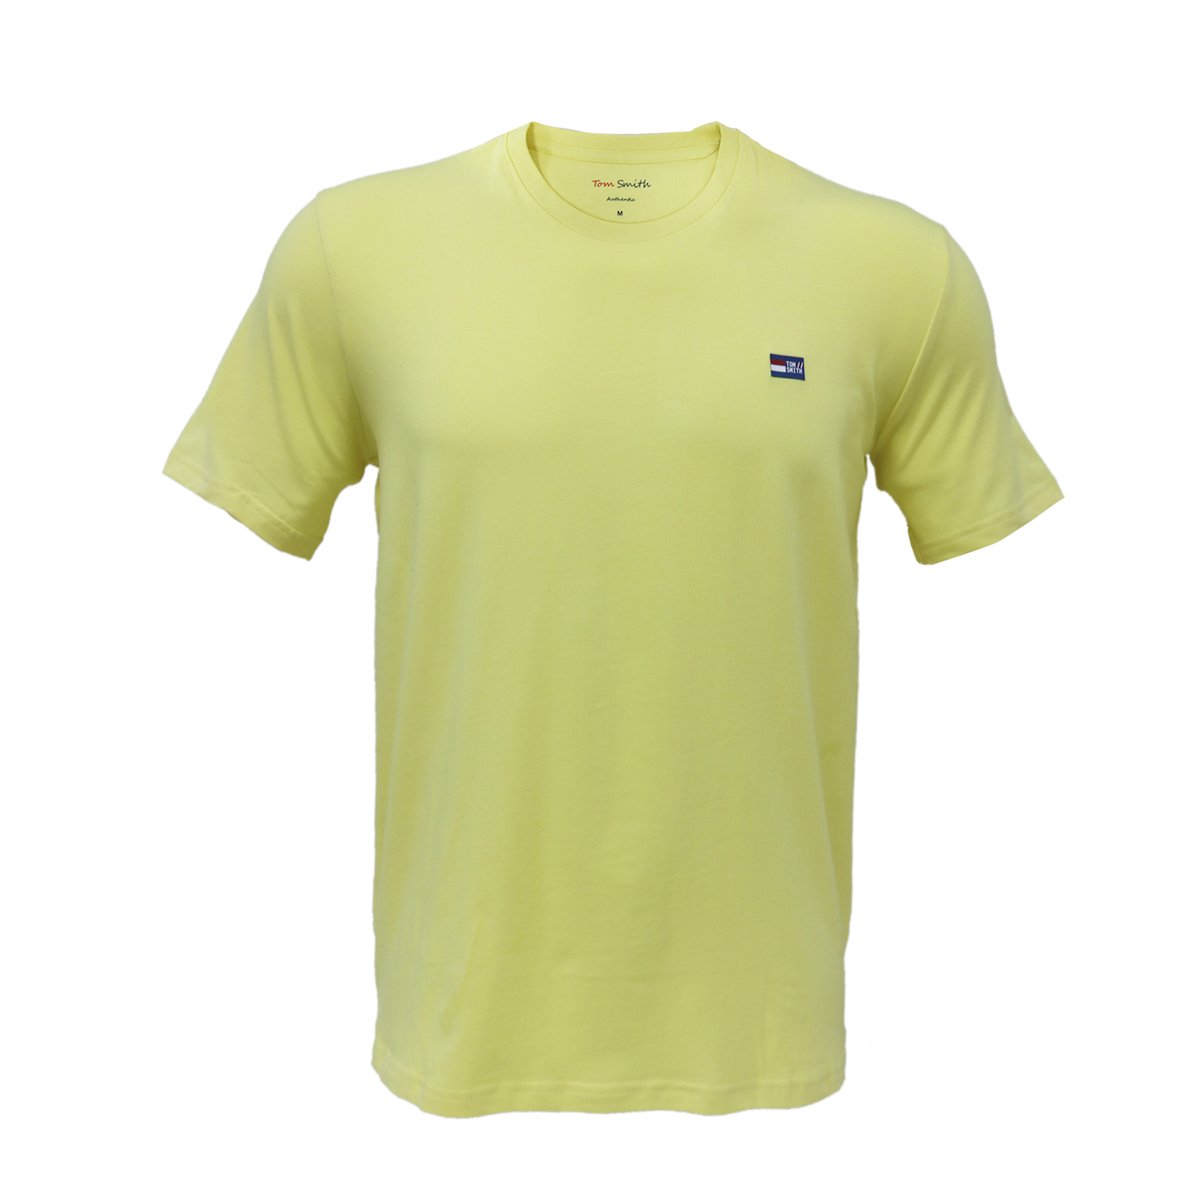 Tom Smith Basic Round Neck T-Shirt Lemon Meringue - XXL